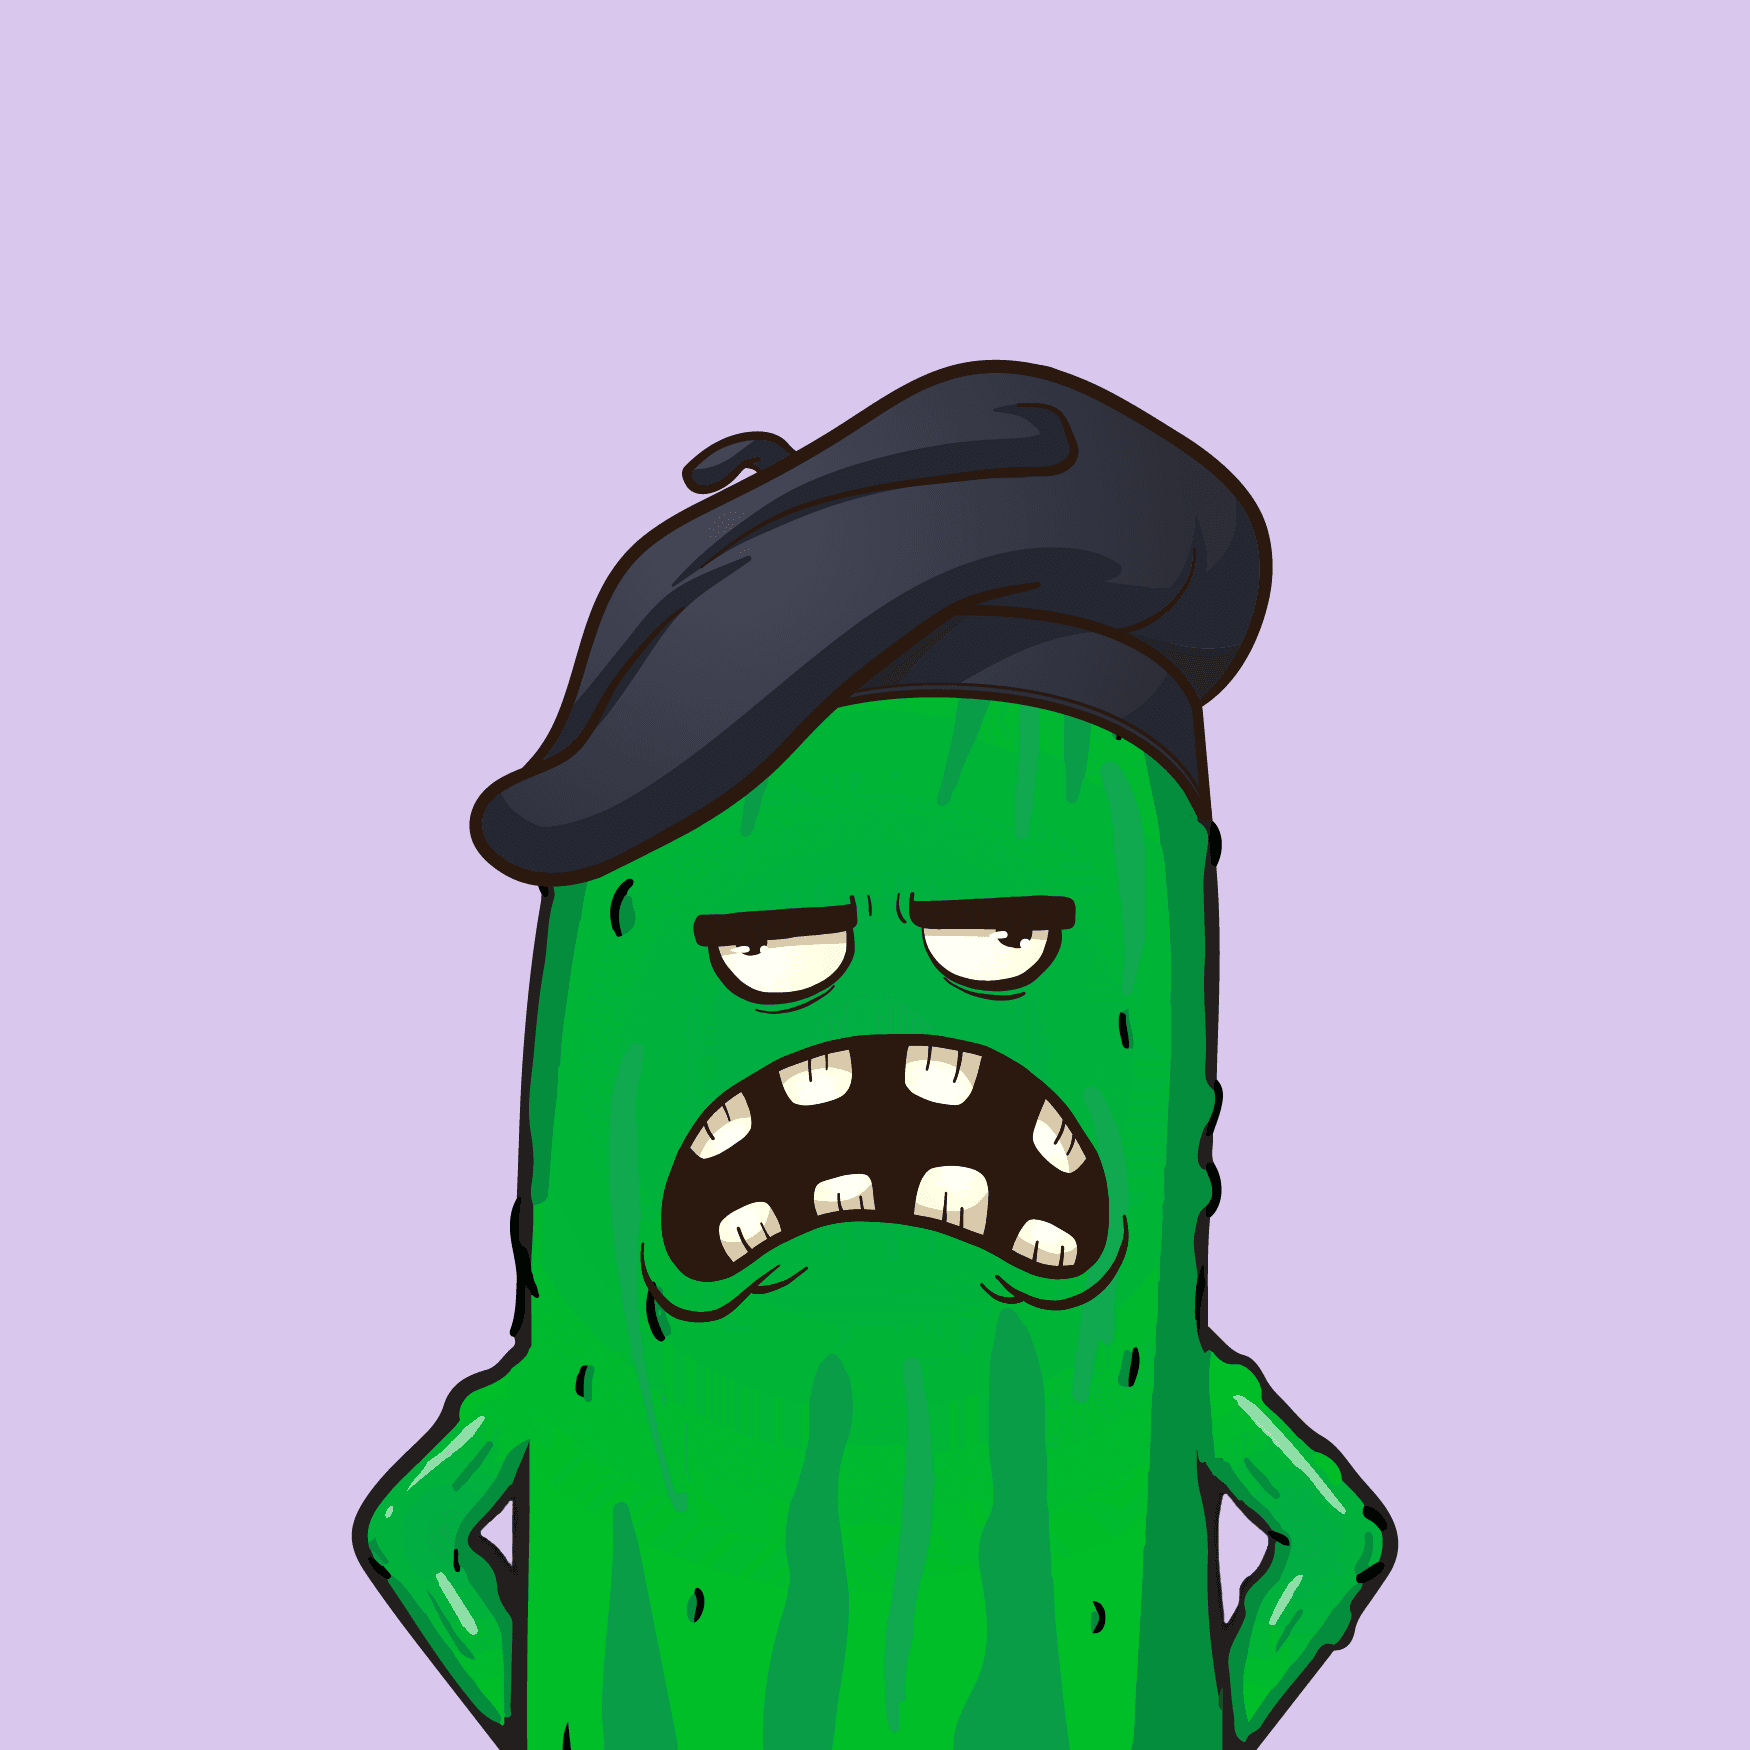 Master cucumber #17